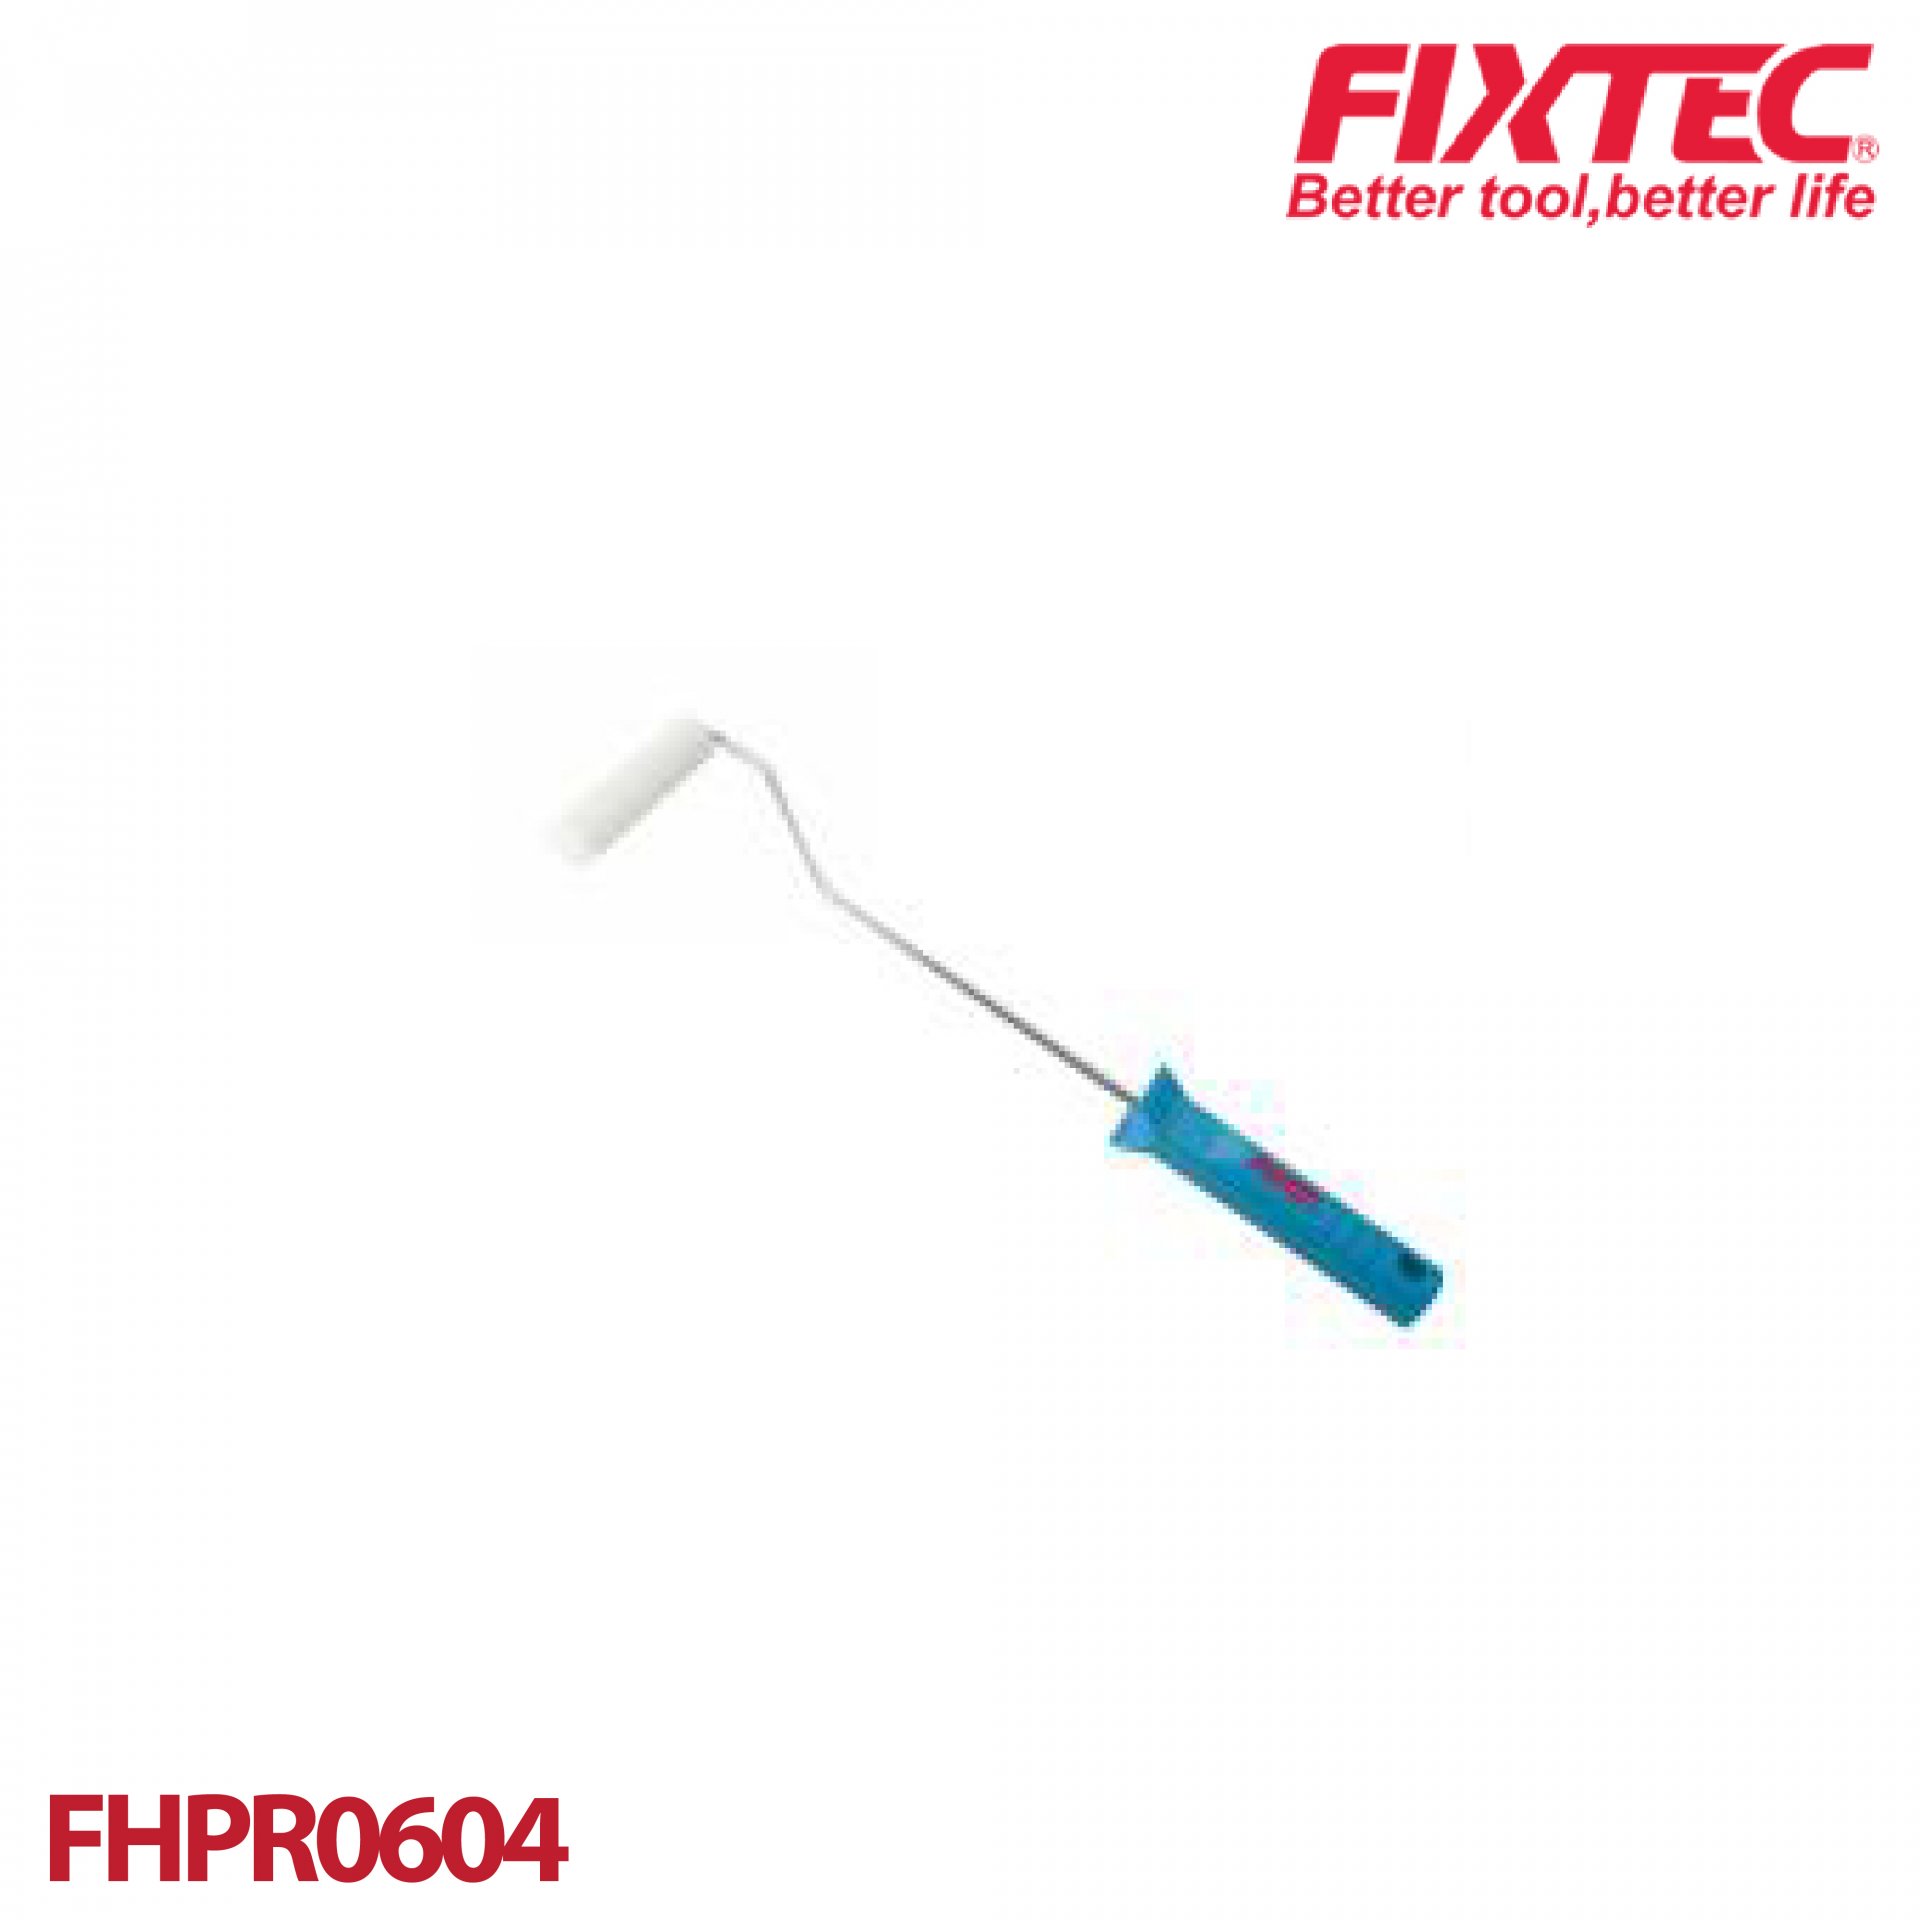 ลูกกลิ้งทาสี 4" FIXTEC FHPR0604